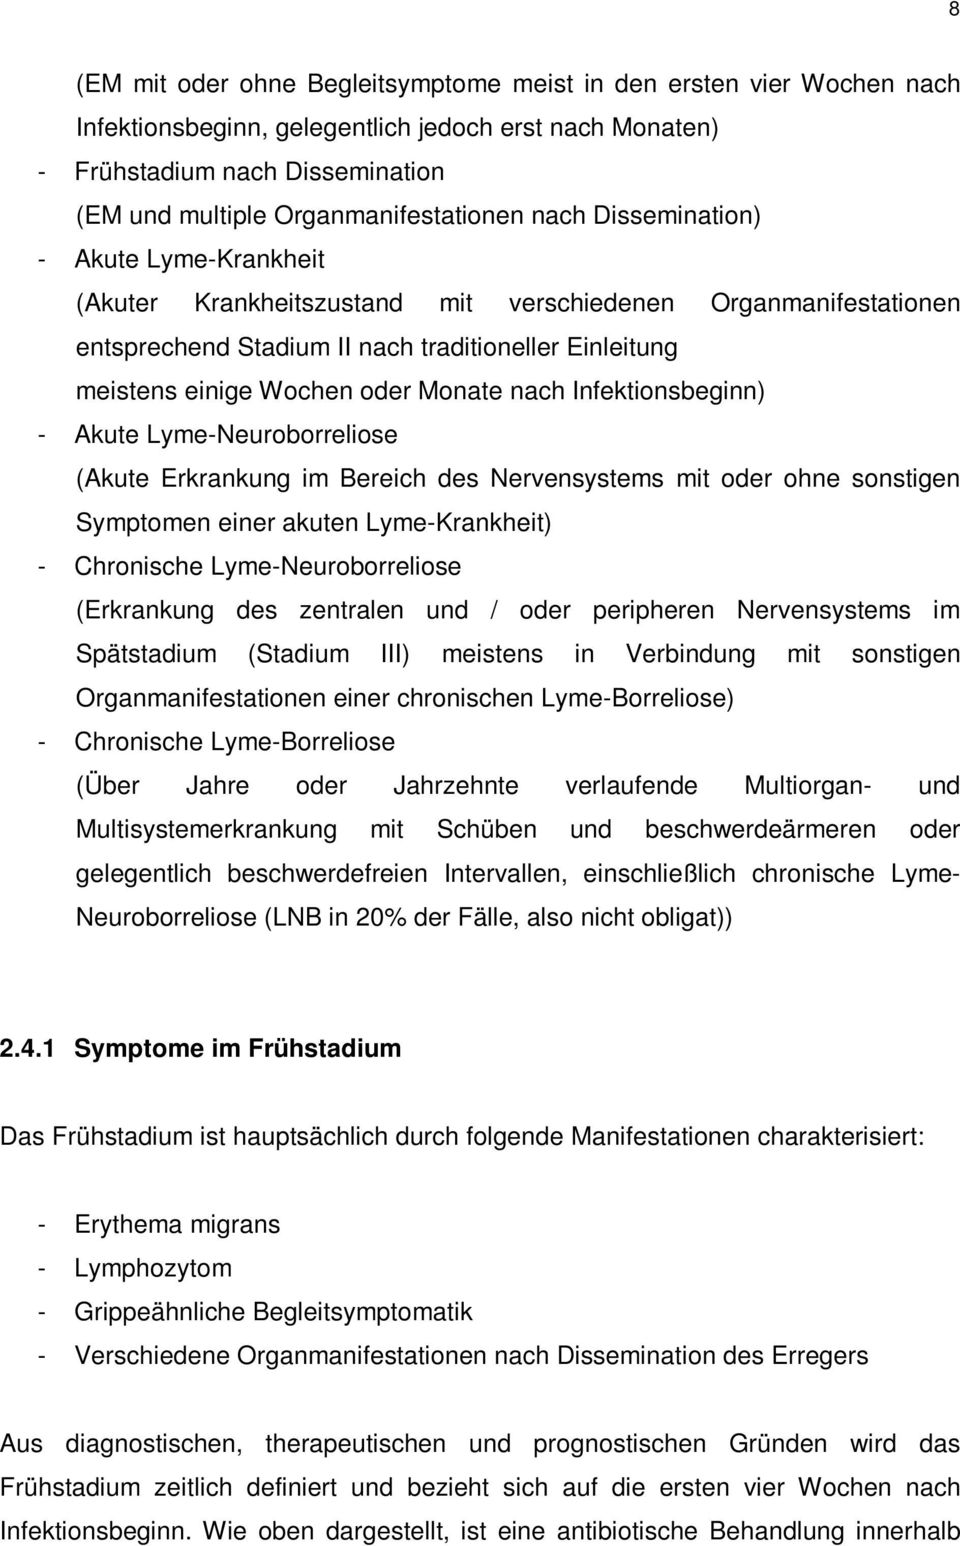 Wochen oder Monate nach Infektionsbeginn) - Akute Lyme-Neuroborreliose (Akute Erkrankung im Bereich des Nervensystems mit oder ohne sonstigen Symptomen einer akuten Lyme-Krankheit) - Chronische